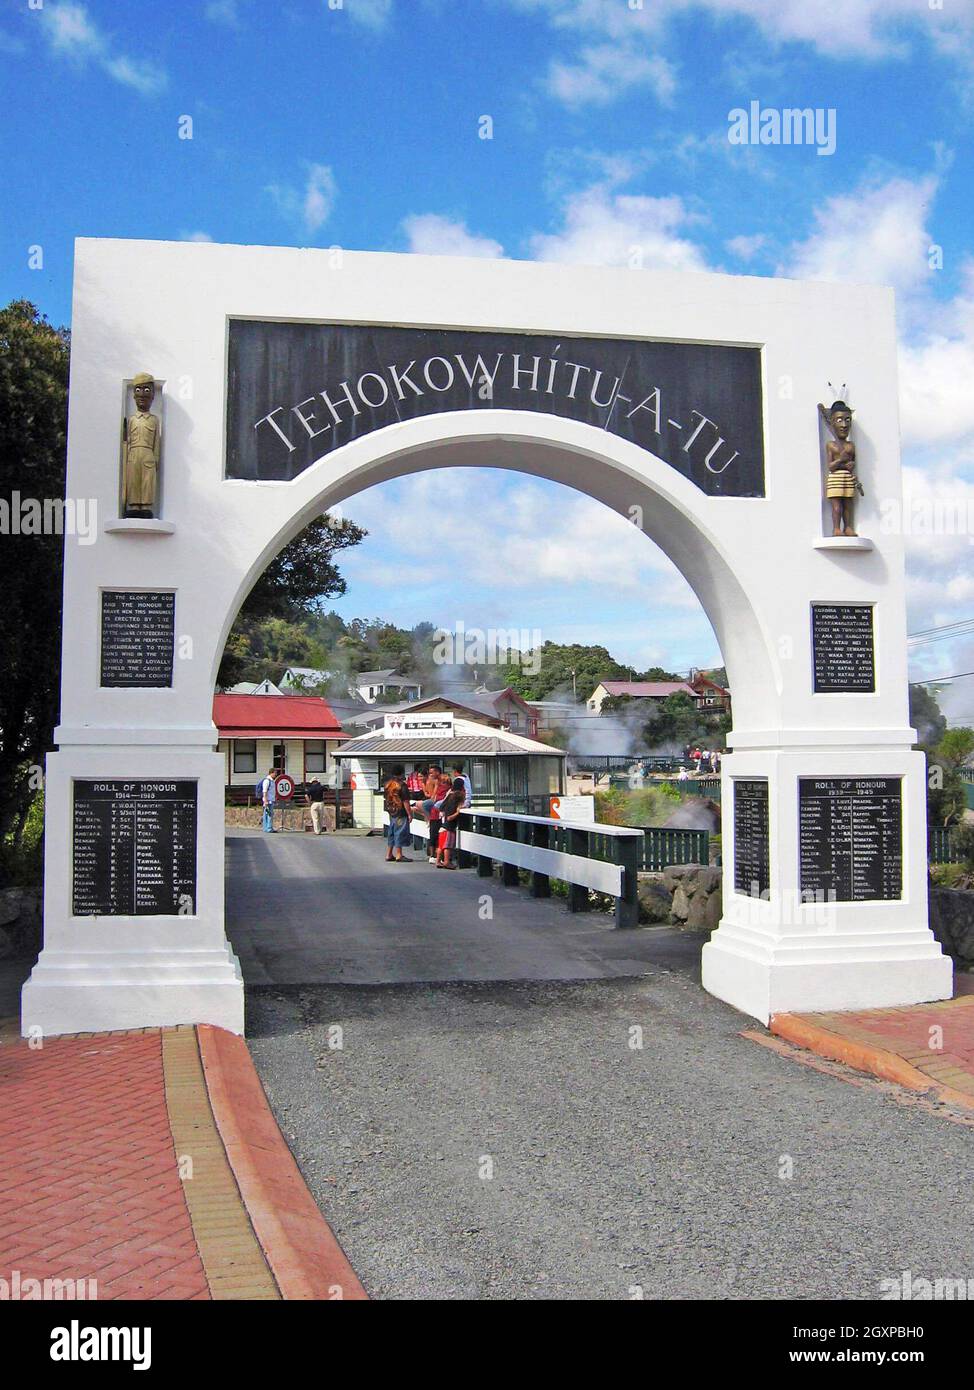 Eingang zum Whaka Village in Rotorua, Neuseeland. Das lebende Thermaldorf ist seit Jahrzehnten die Heimat von Maori und ist für Touristen für interkulturelle Erlebnisse offen. Der Gedenkbogen ist sowohl der Eingang als auch der Ausgang zum Dorf, in dem gefallene Soldaten gedenkt, deren Namen unten im Bogen eingeschrieben sind. Stockfoto